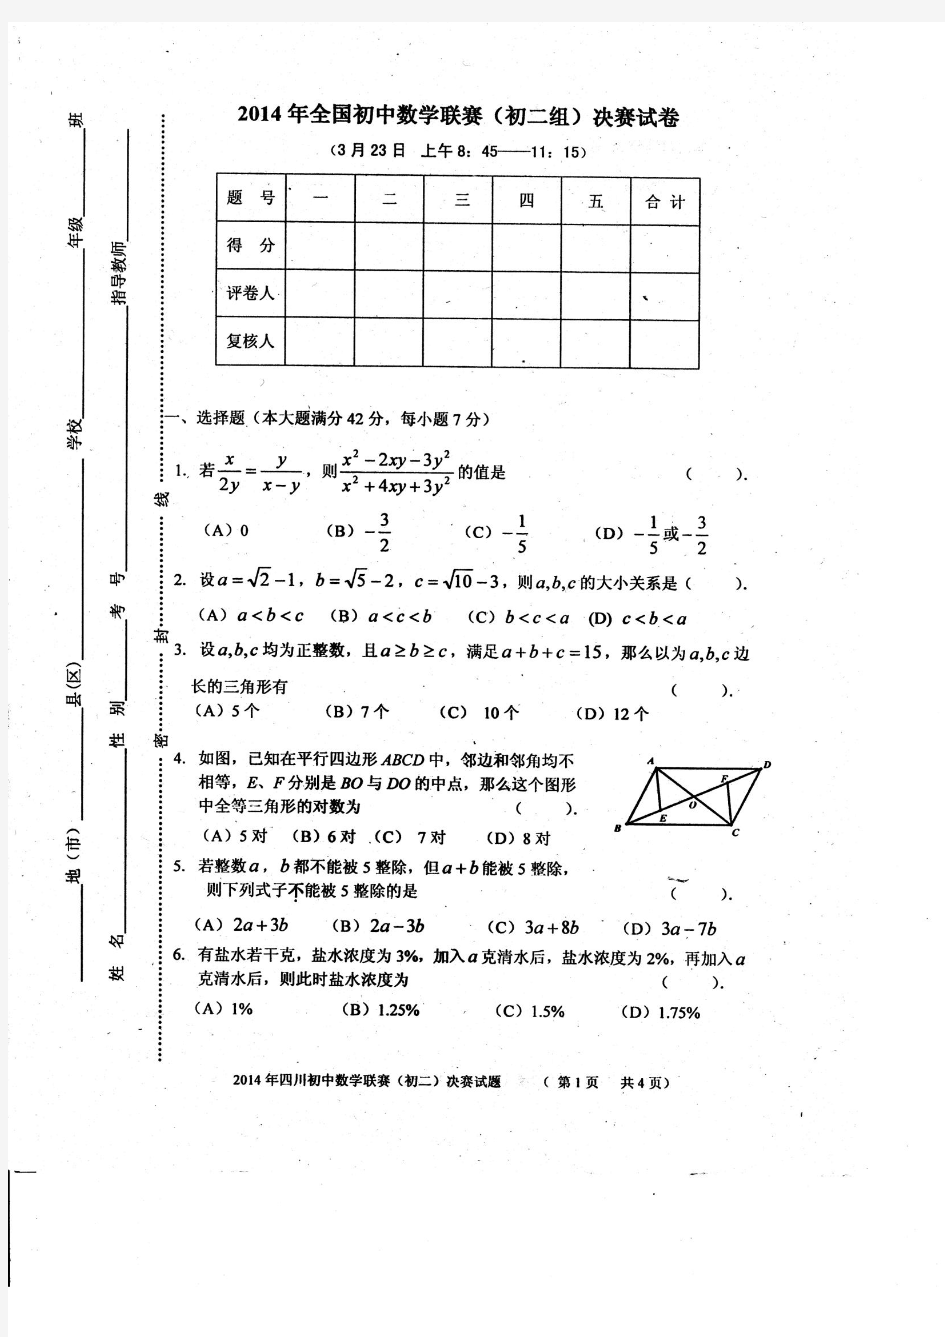 2014年四川省初中数学联赛初二组决赛试题